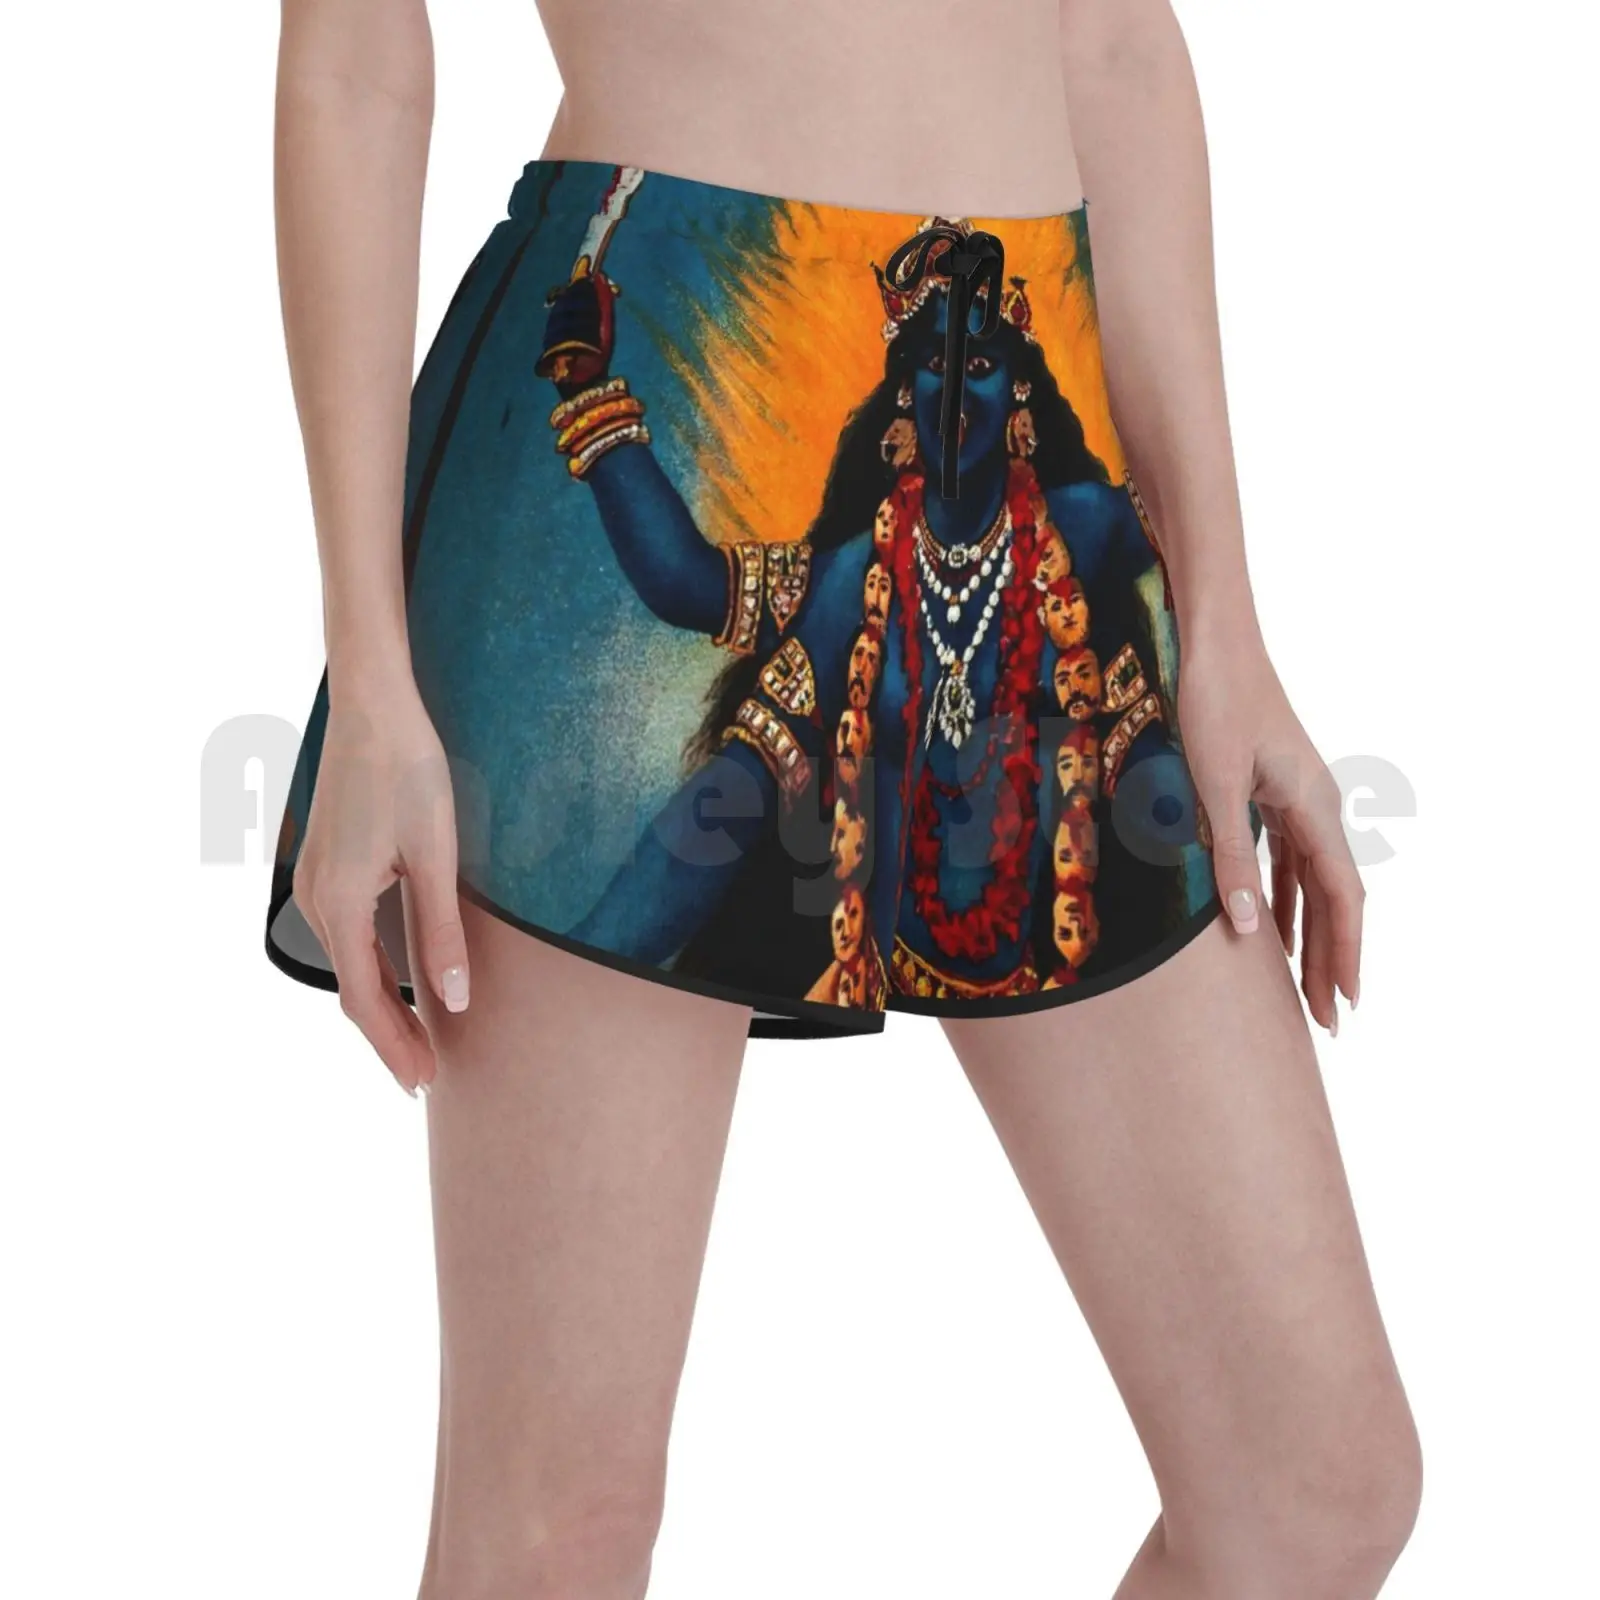 

Шорты Kali-богиня для плавания, женские пляжные шорты, Защитные шорты Kali богини, богини, черная богиня смерти Вселенная